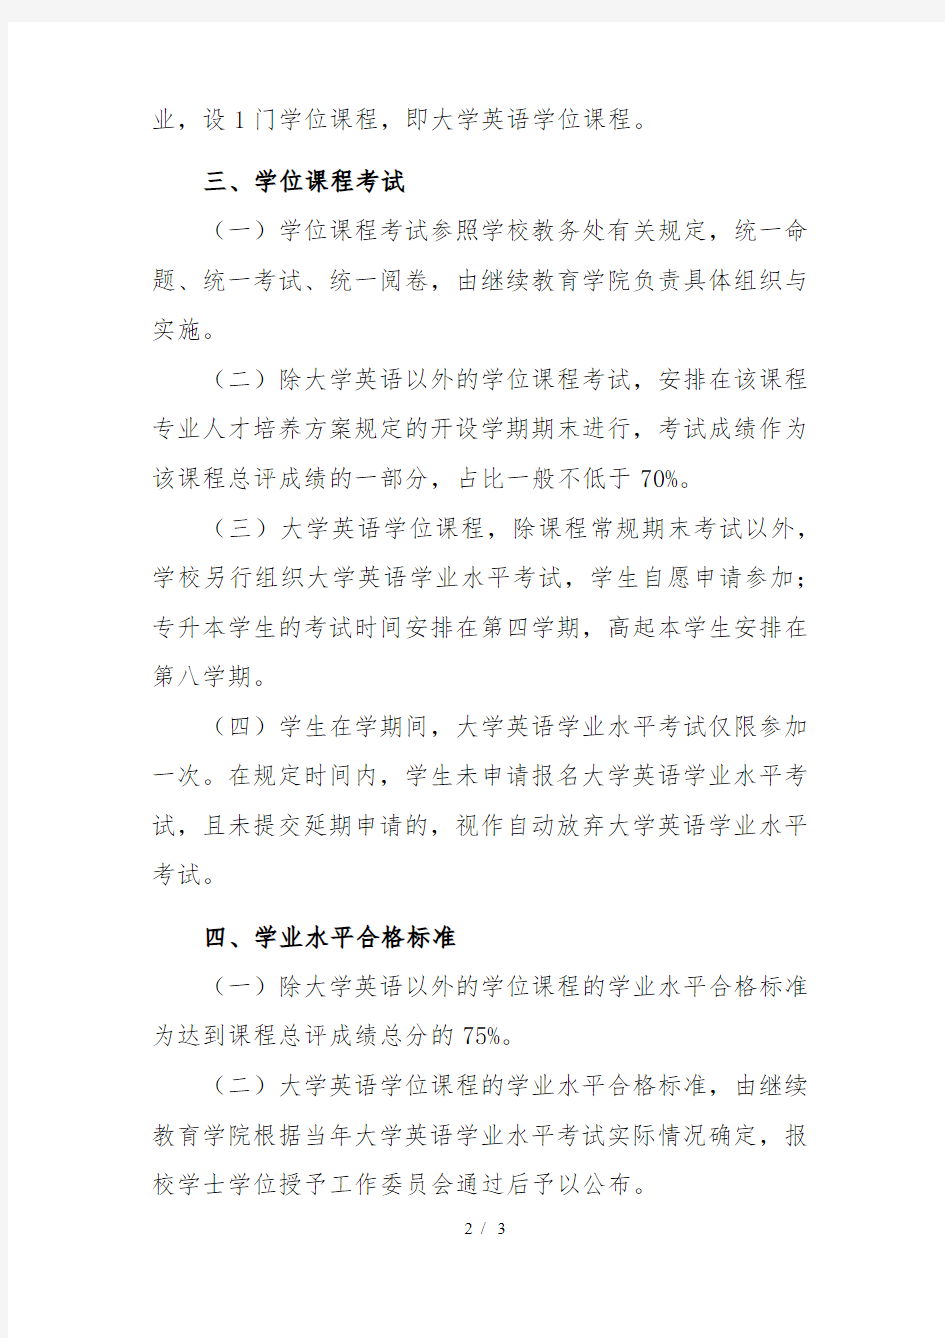 上海理工大学继续教育学院文件